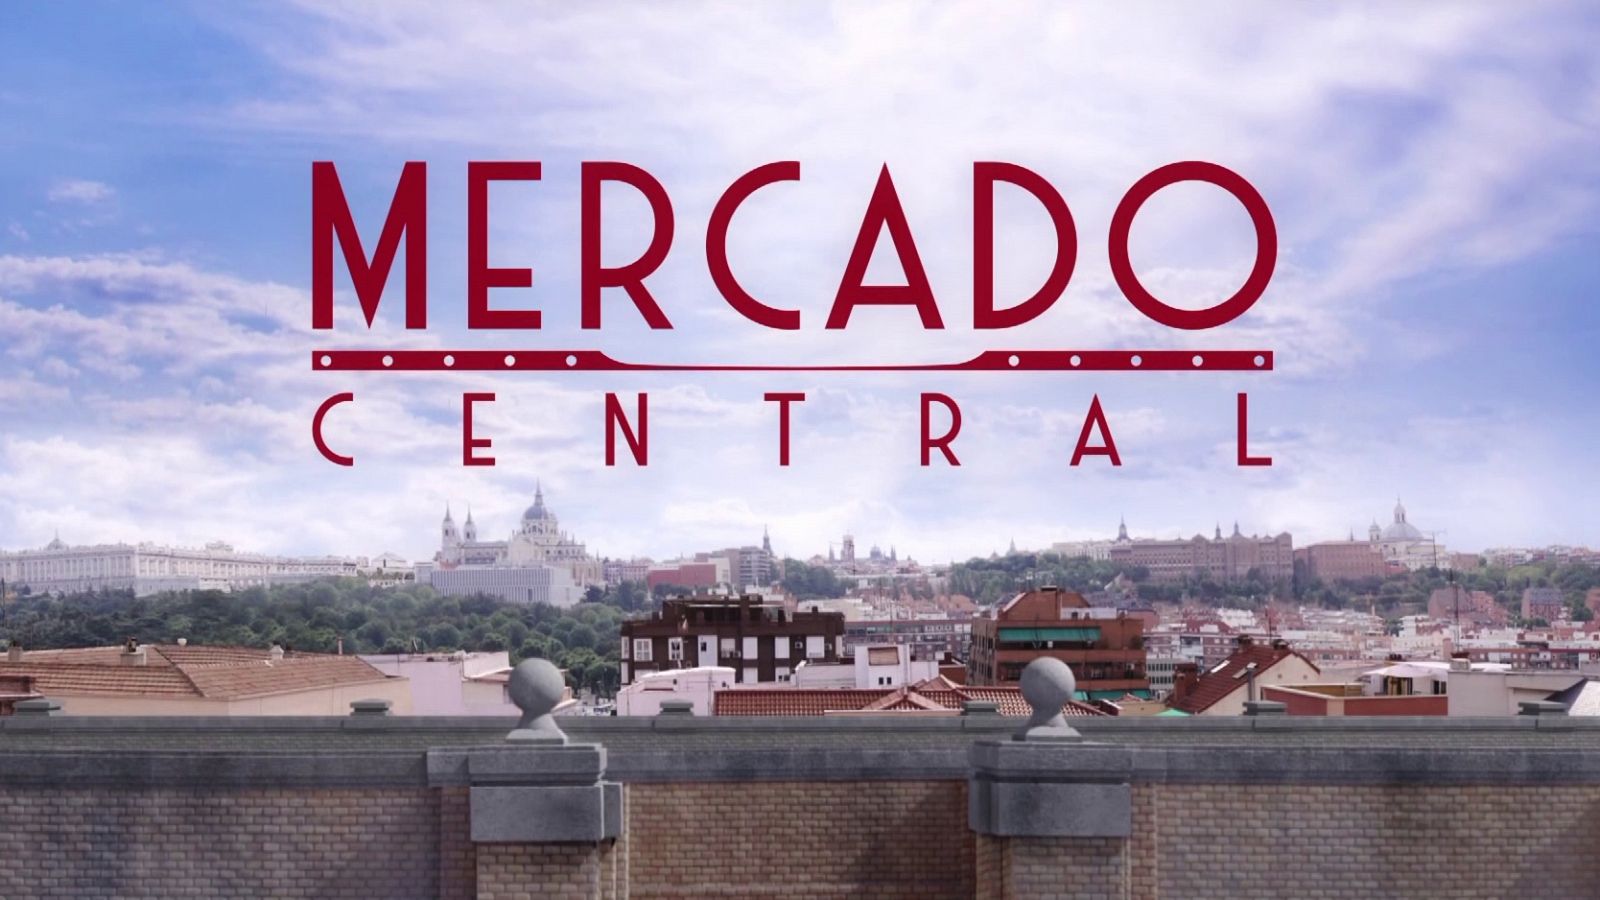 Mercado Central -  La cabecera de 'Mercado Central'